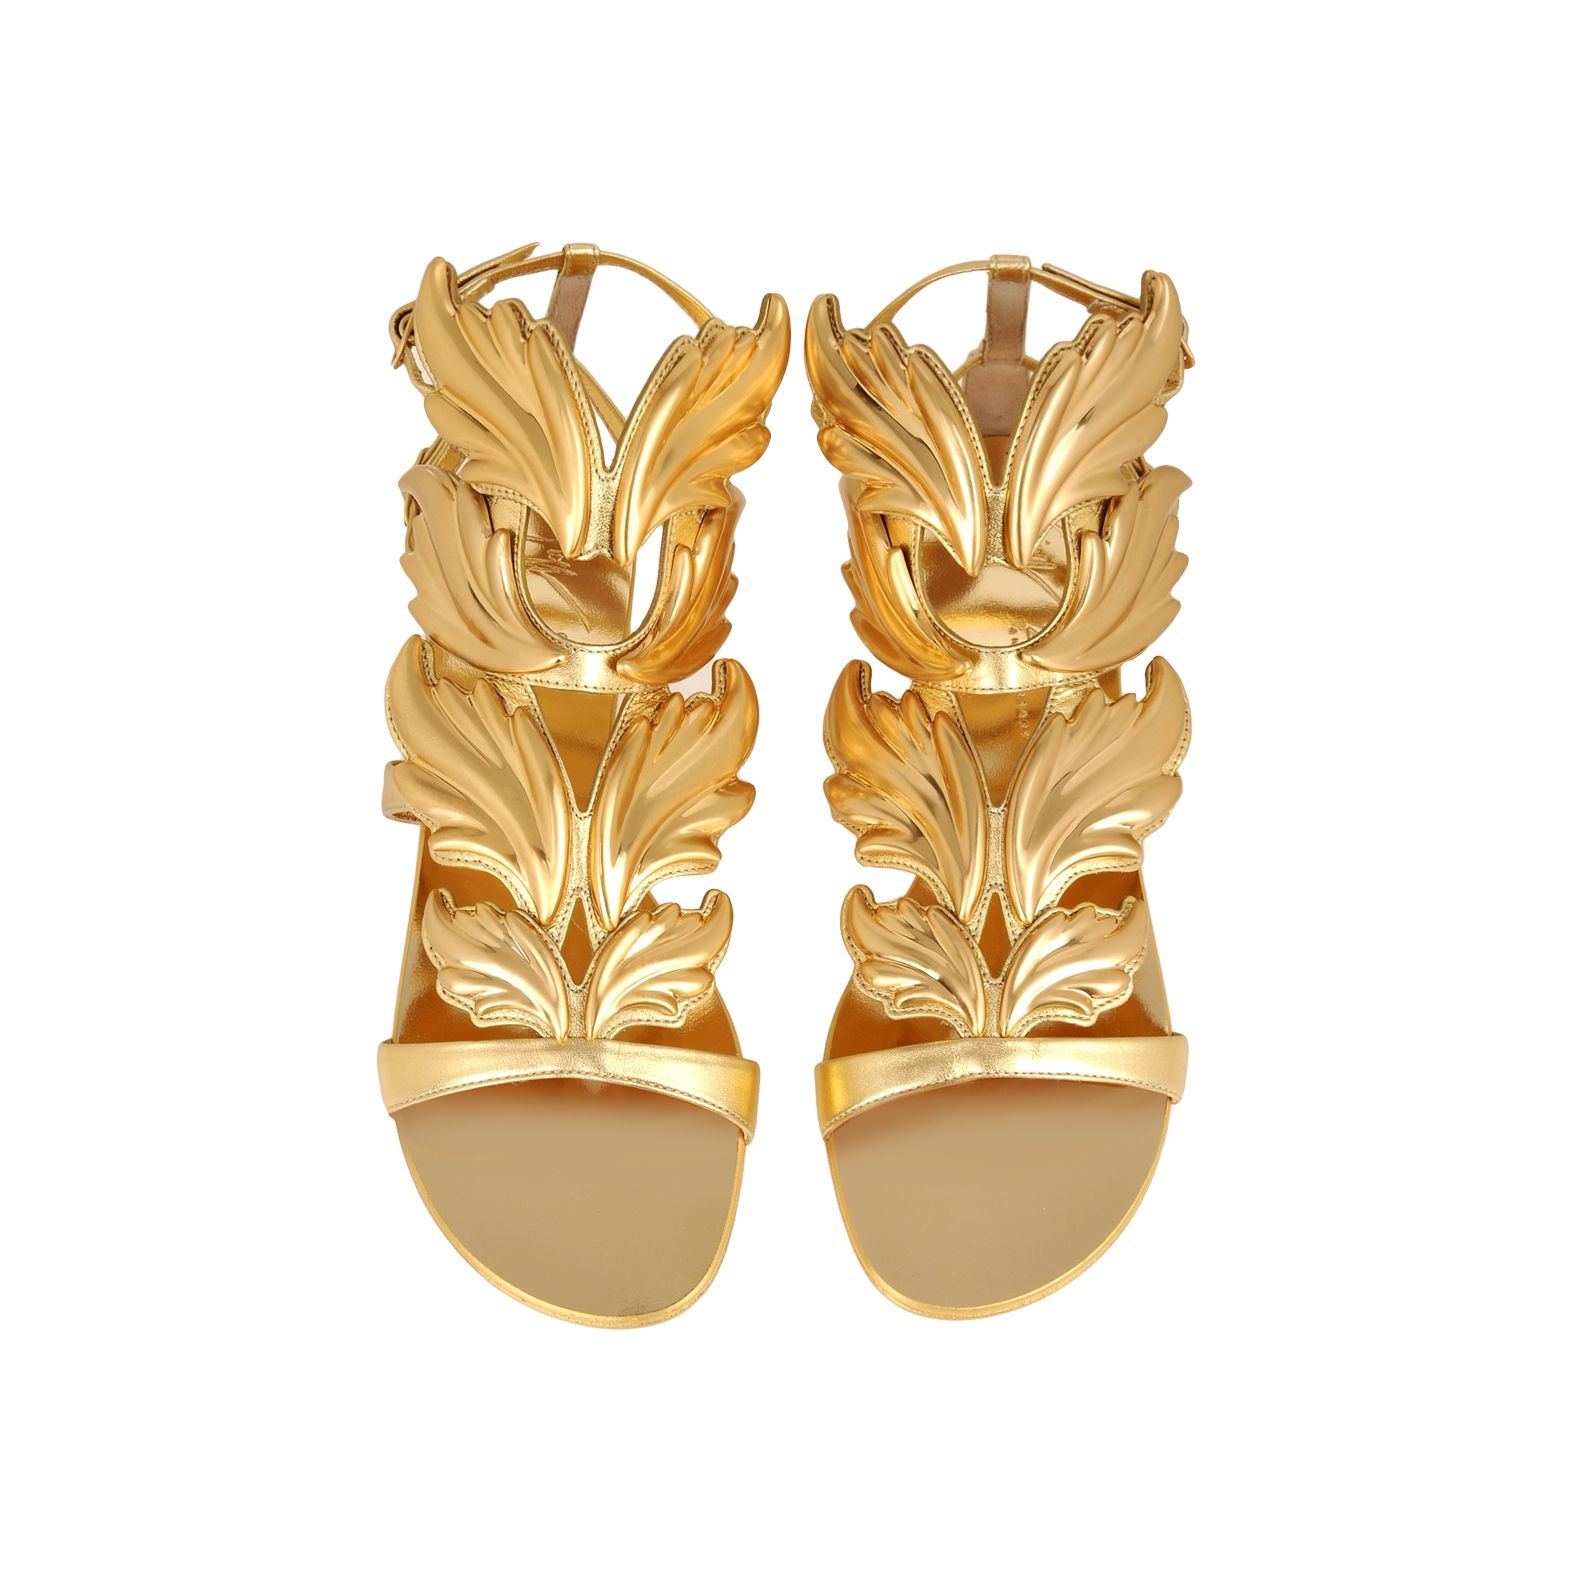 giuseppe gold sandals